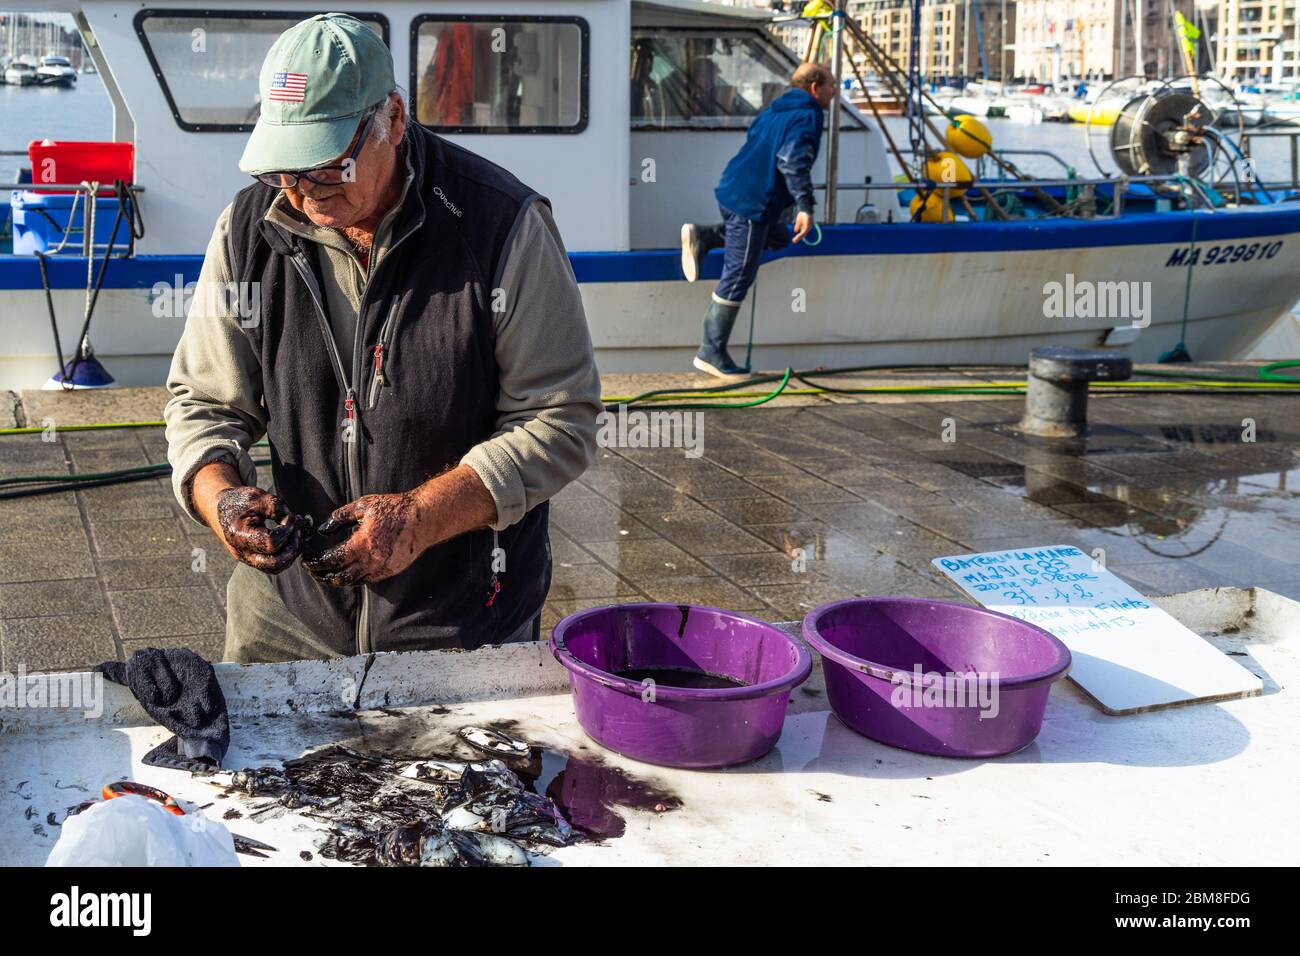 Un vieux pêcheur vendant de la seiche à l'encre noire au marché de poissons de Marseille. Marseille, France, janvier 2020 Banque D'Images